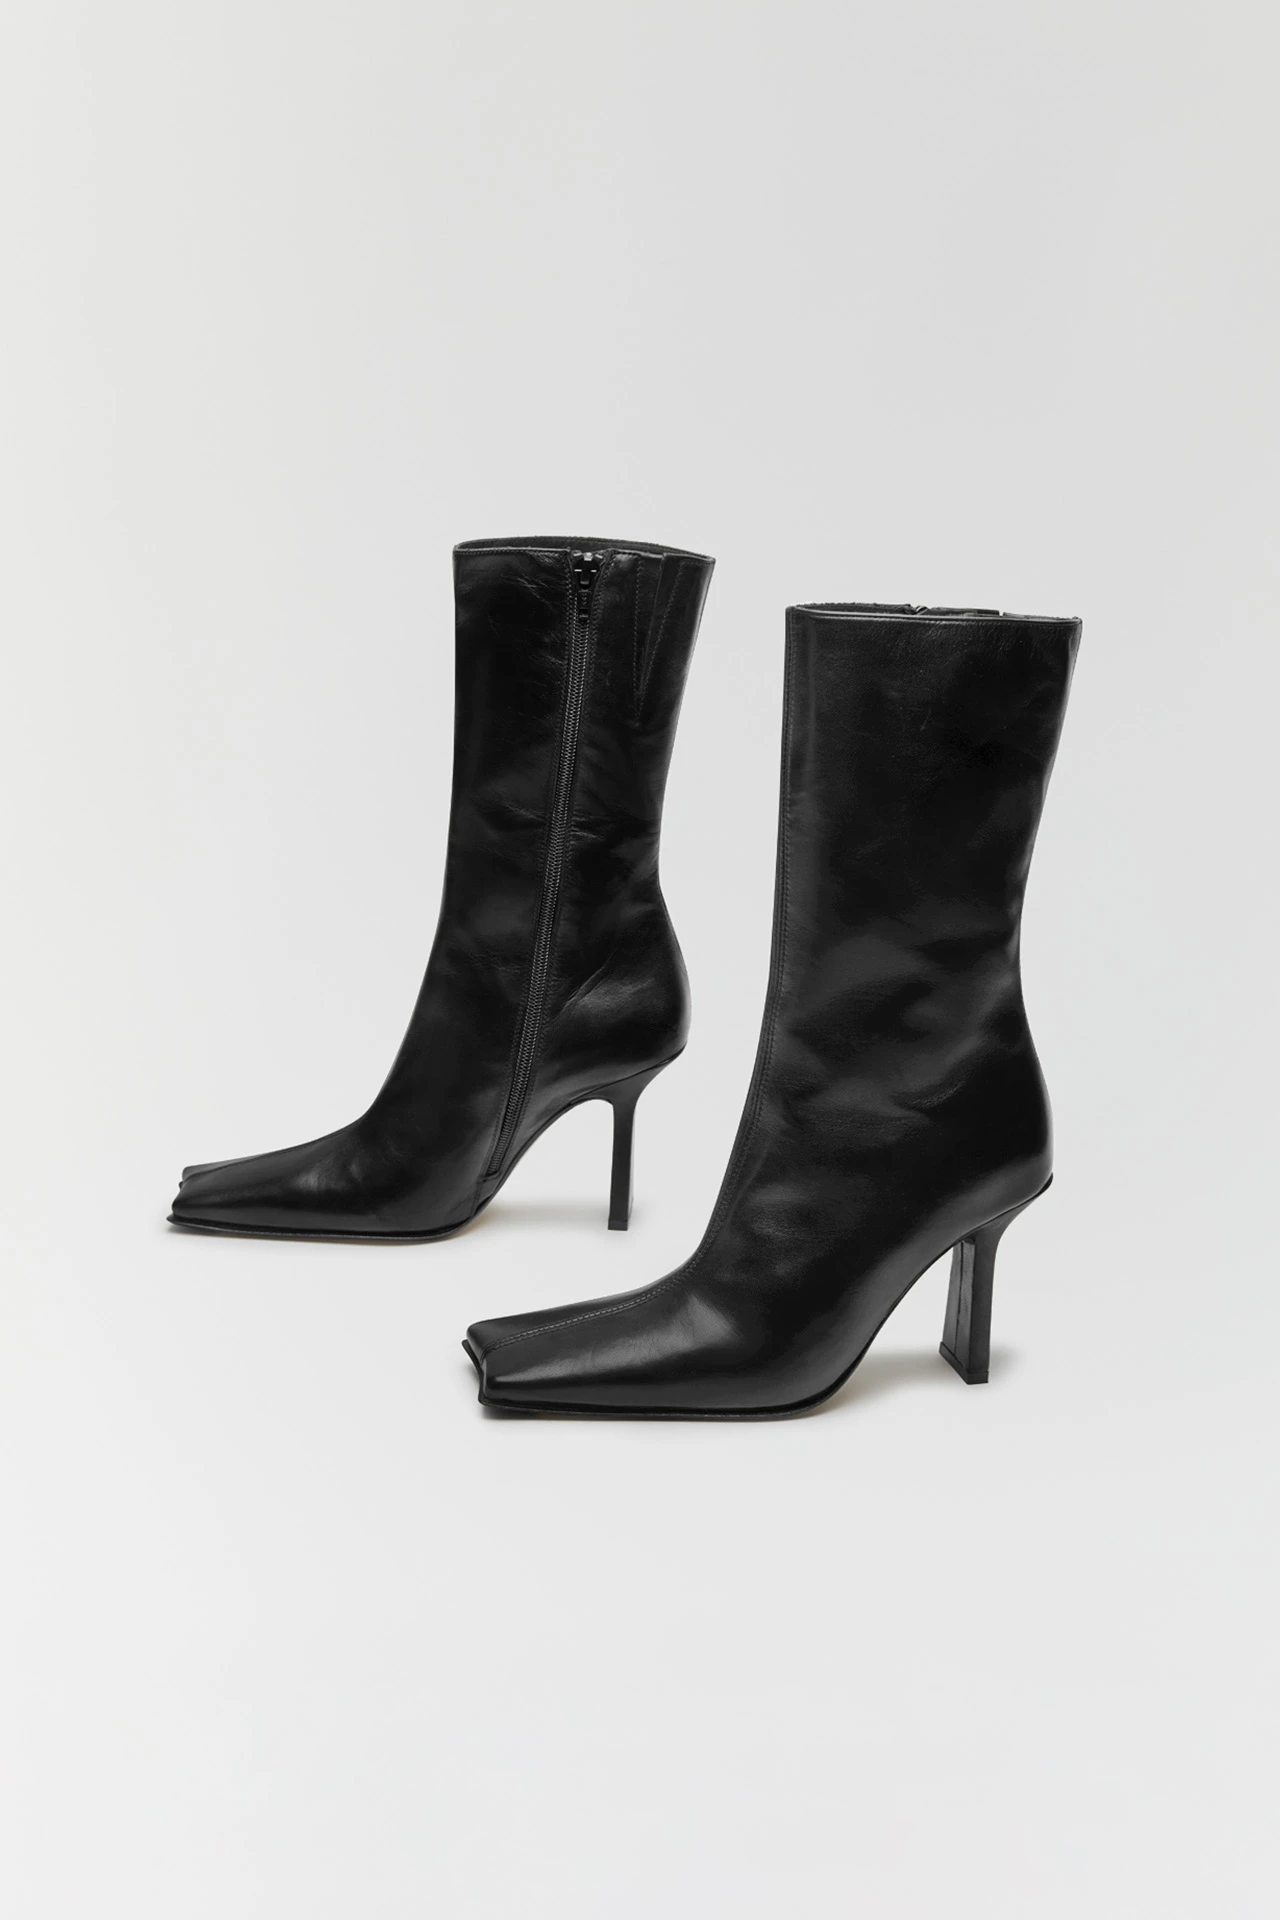 miista-noor-black-boots-3